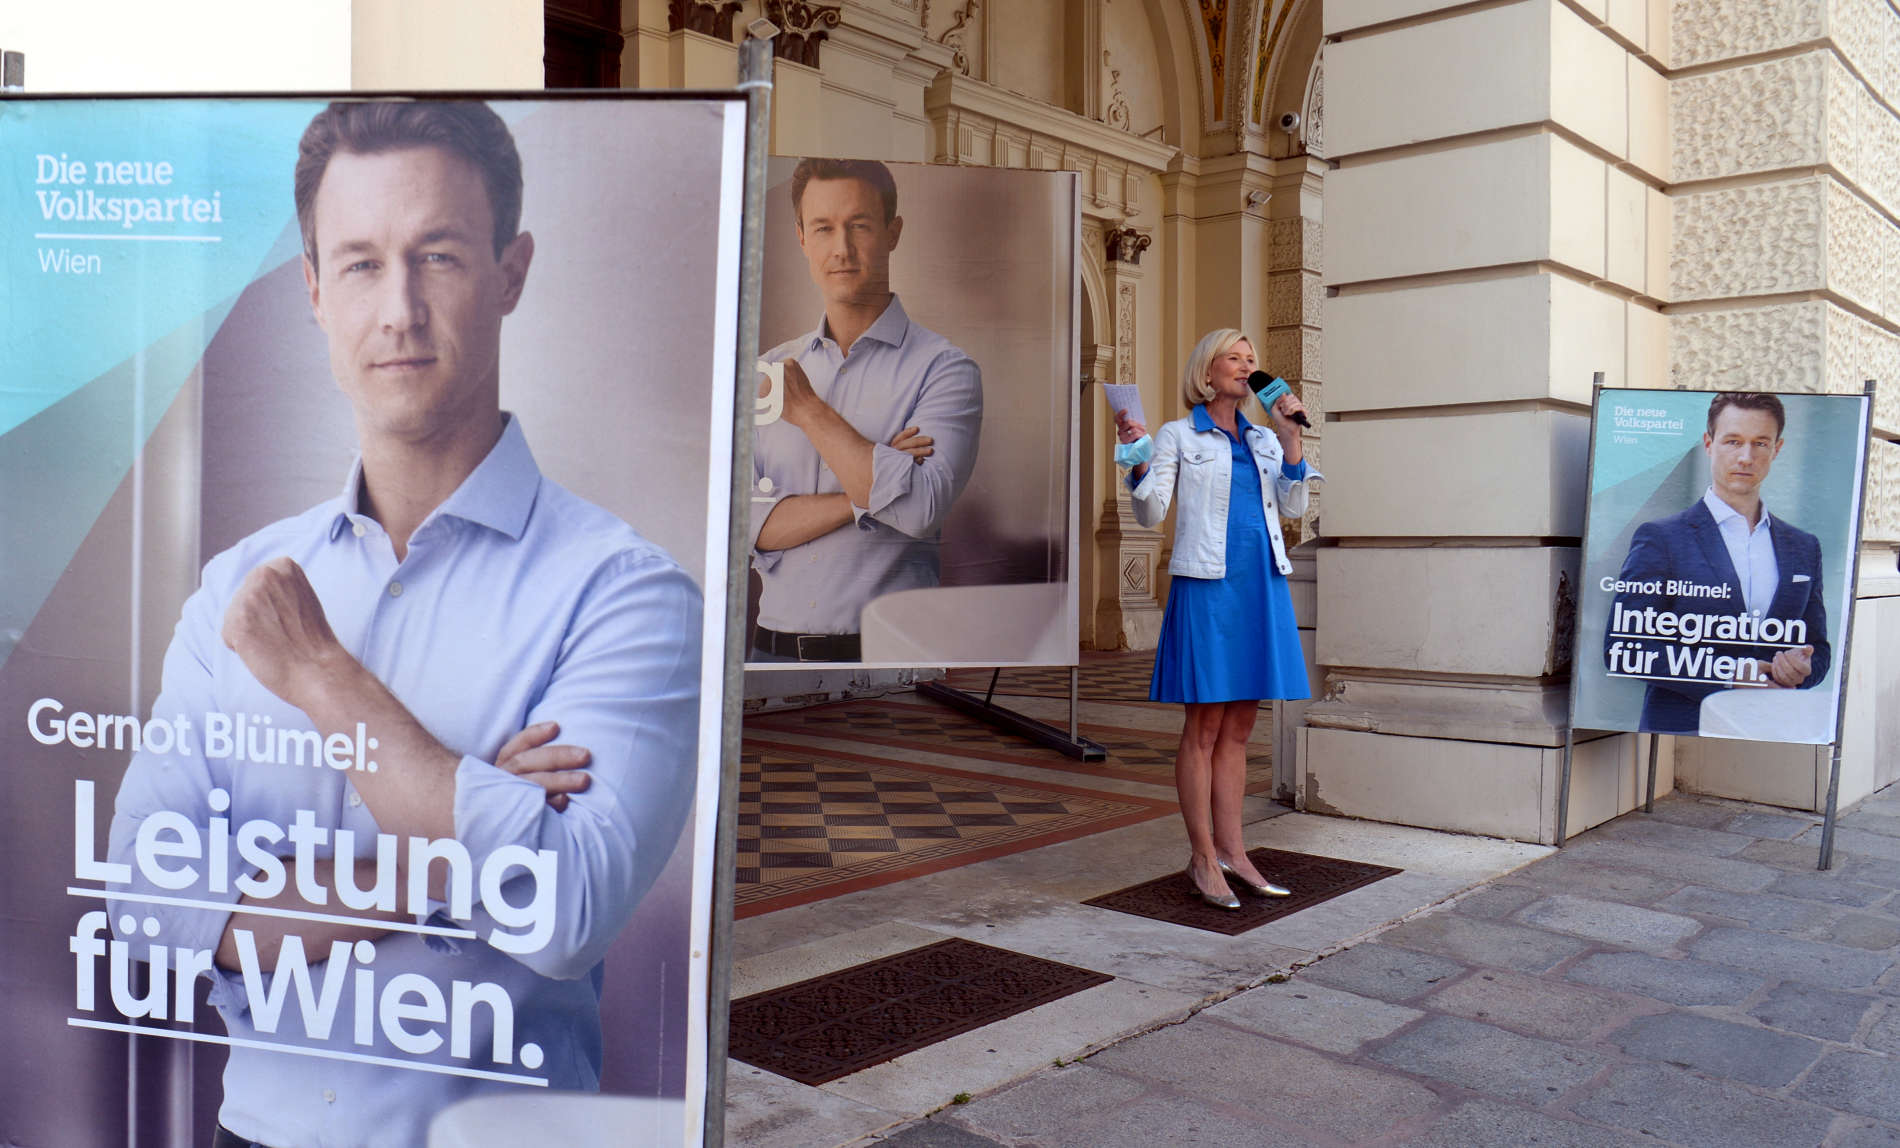 ÖVP-Kampagnenleiterin Bernadette Arnoldner lüftete gestern das Geheimnis um die Blümel-Plakate. Ausgehend von den mageren 9,24 Prozent des Jahres 2015 hält sie eine Verdoppelung des Stimmenanteils für möglich, jedenfalls wolle man jene Partei werden, die den größten Zuwachs erziele.